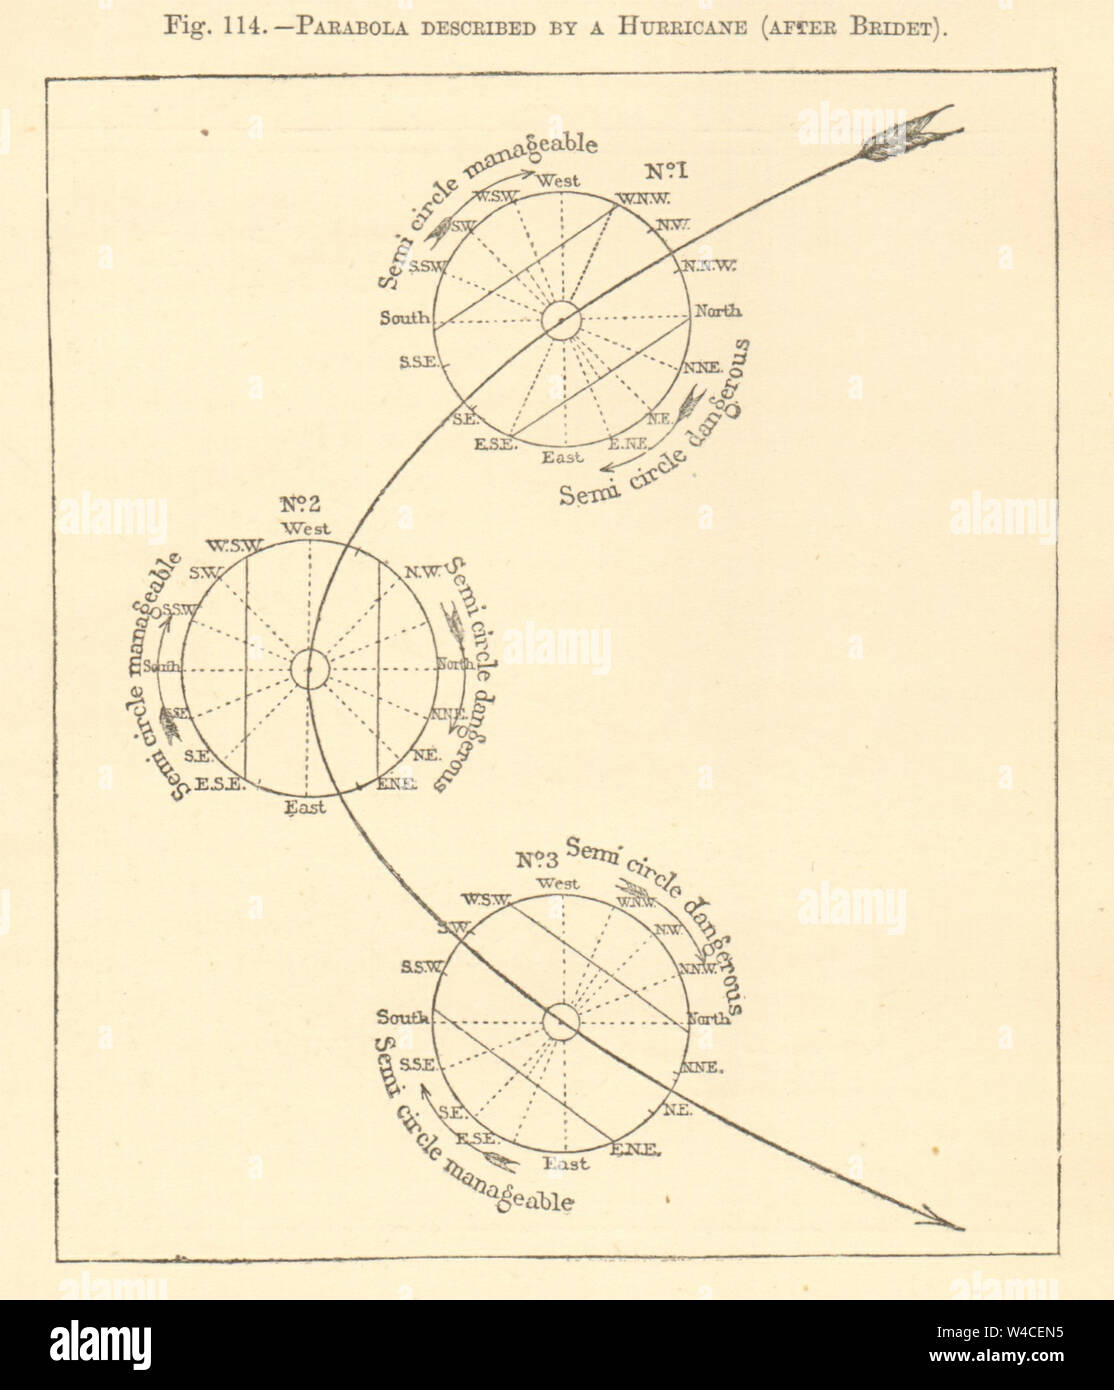 Parabel beschrieben durch einen Hurrikan (nach Bridet). Kartenskizze. Diagramm drucken 1886 Stockfoto